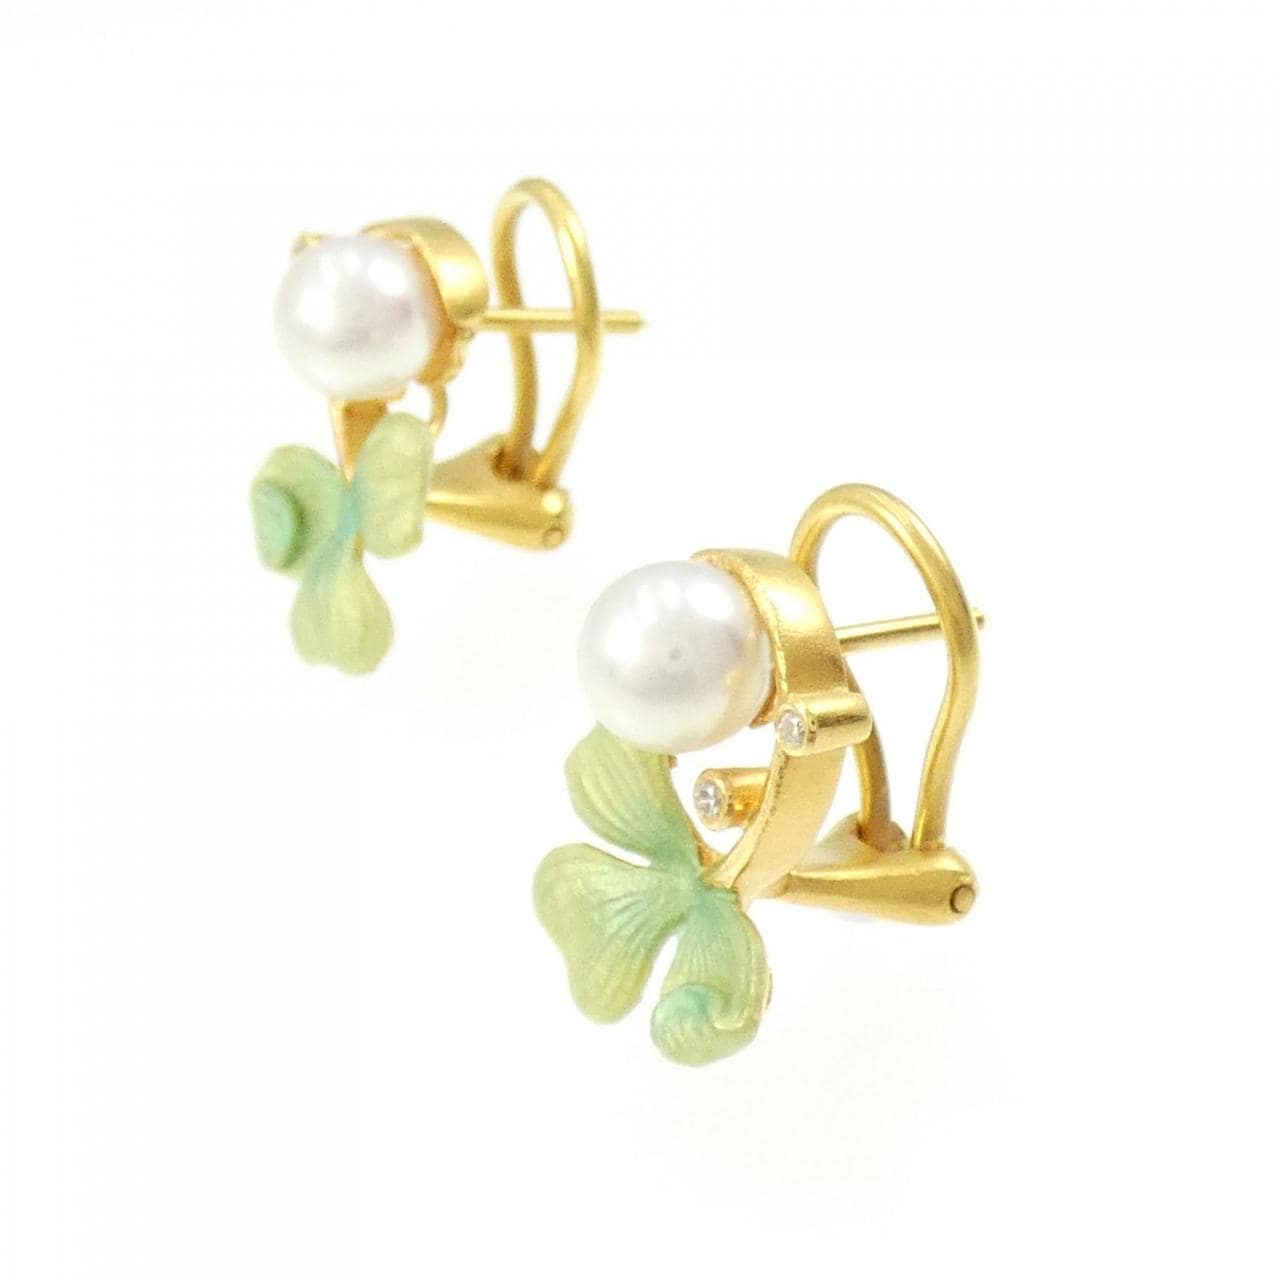 MASRIERA clover enamel earrings